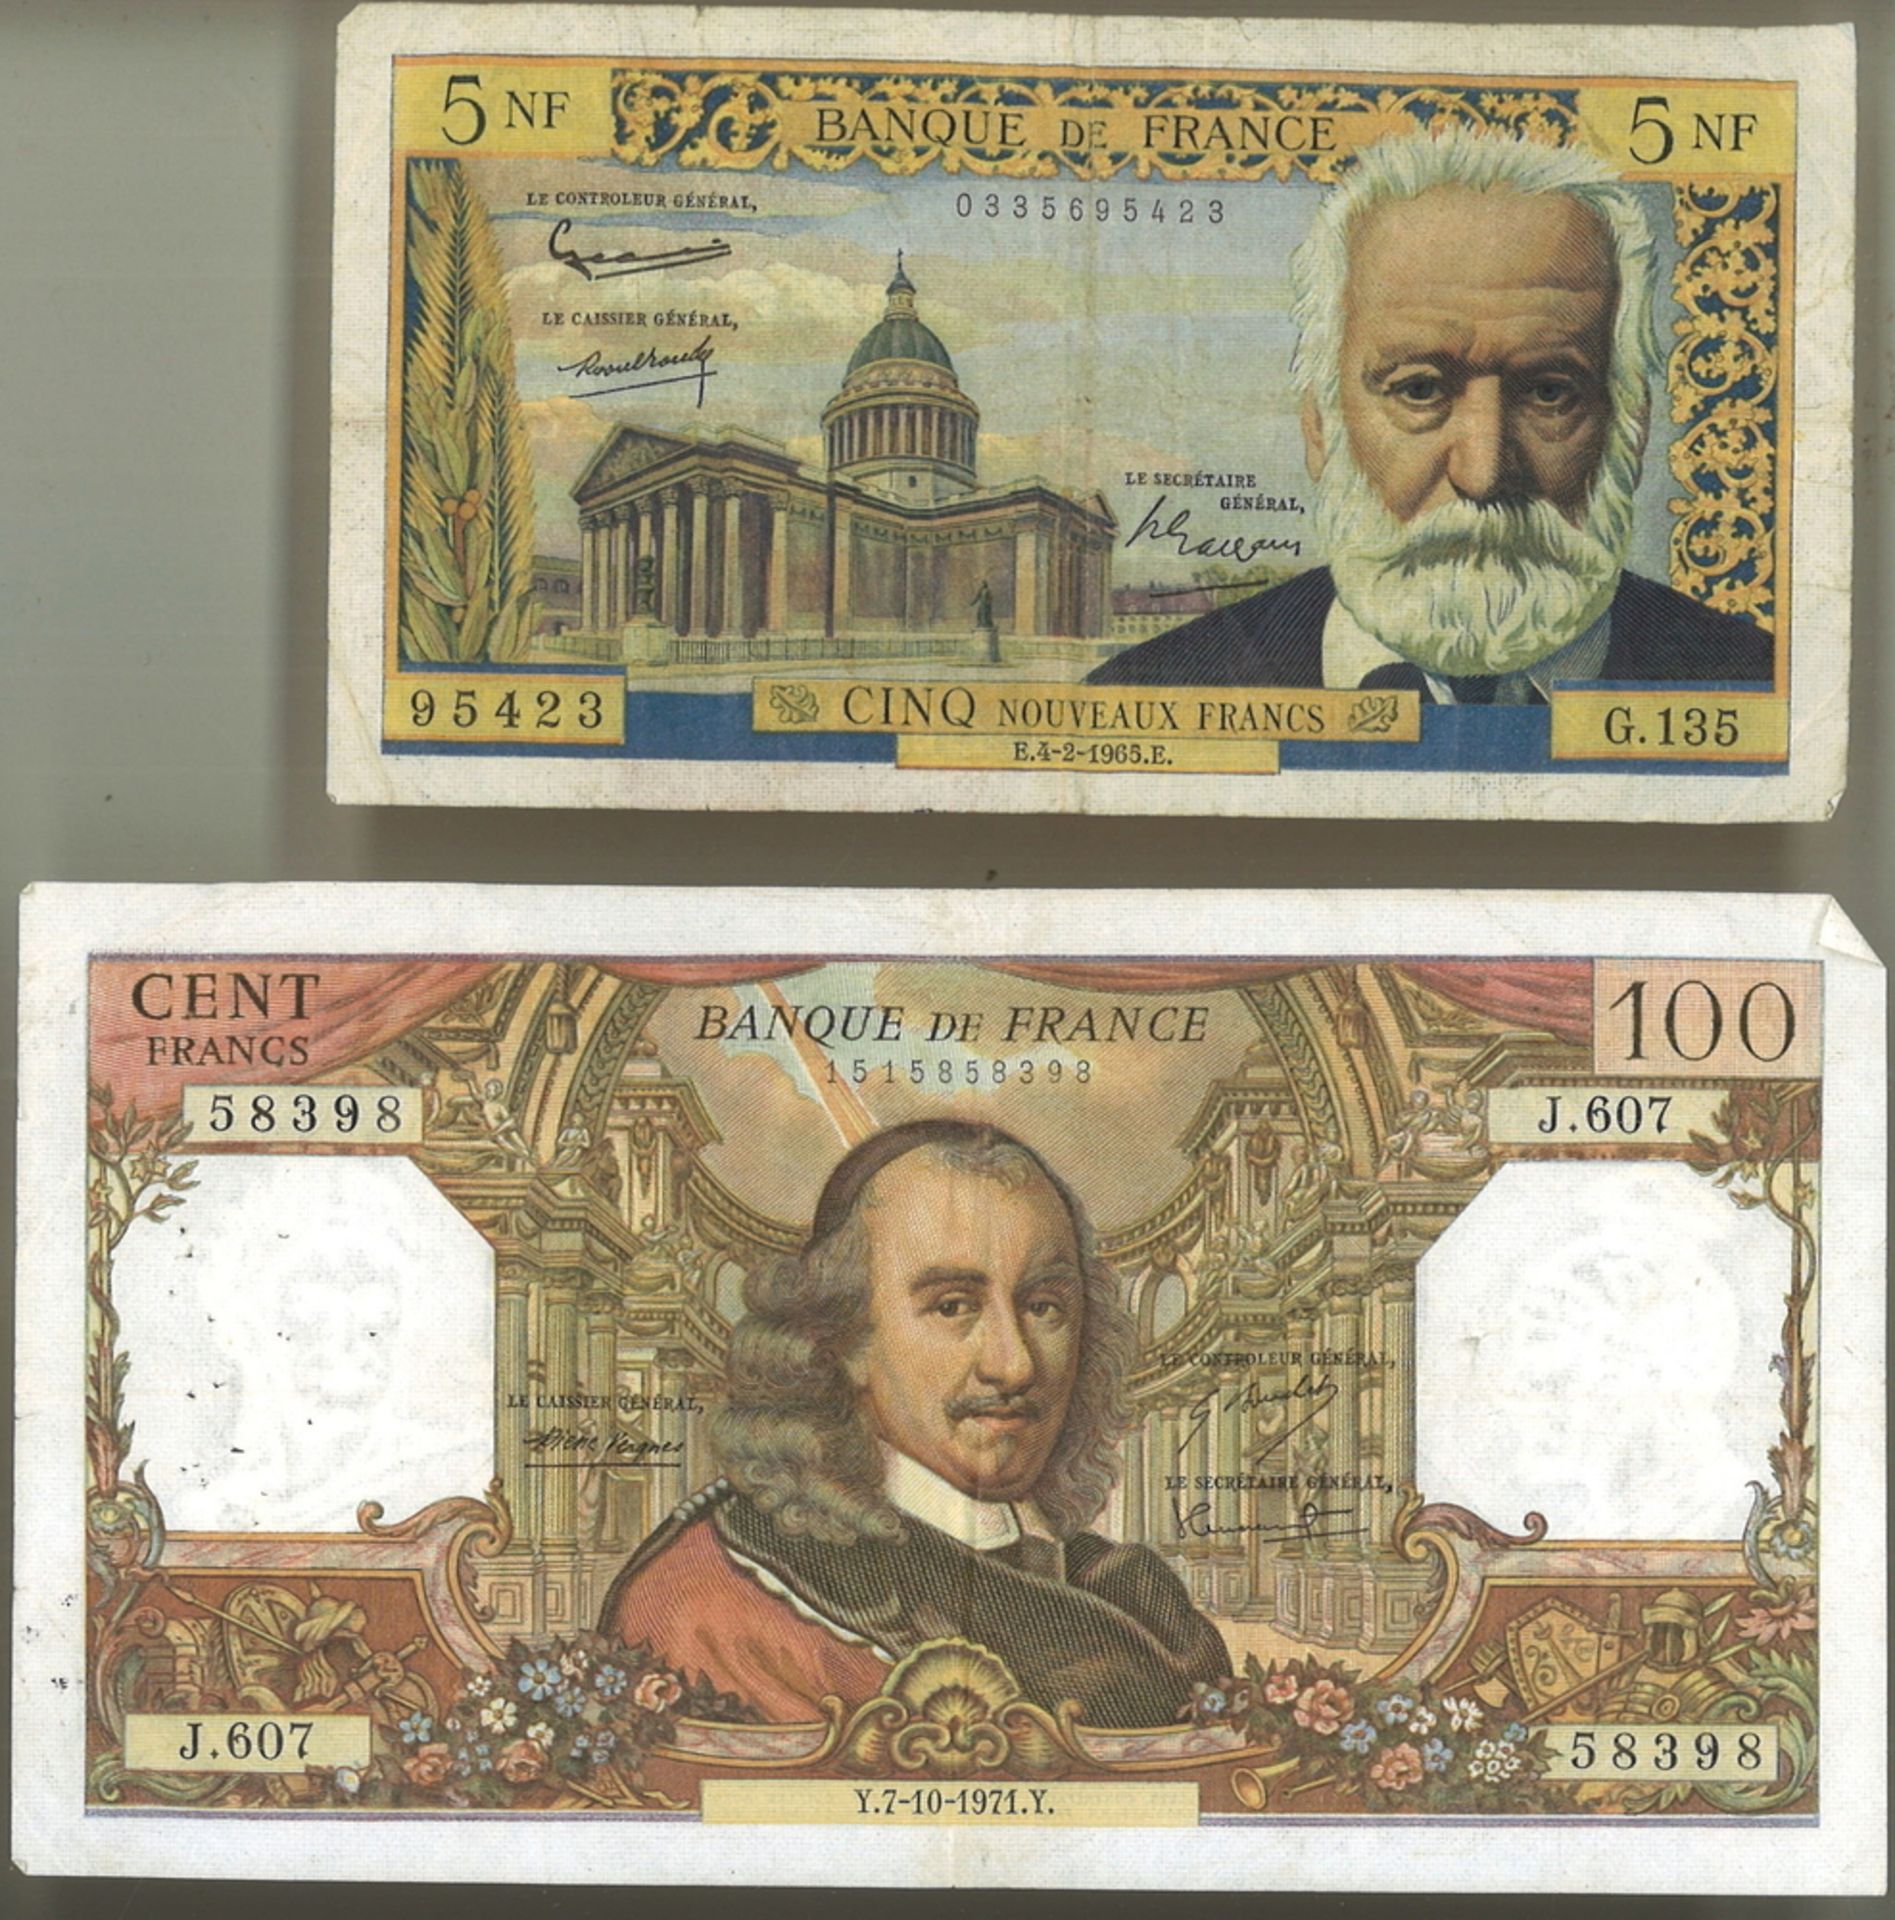 2 Banknoten Frankreich dabei 1 100 Francs Schein 1971 sowie 1 seltener 5 Francs Schein 1965. Beide